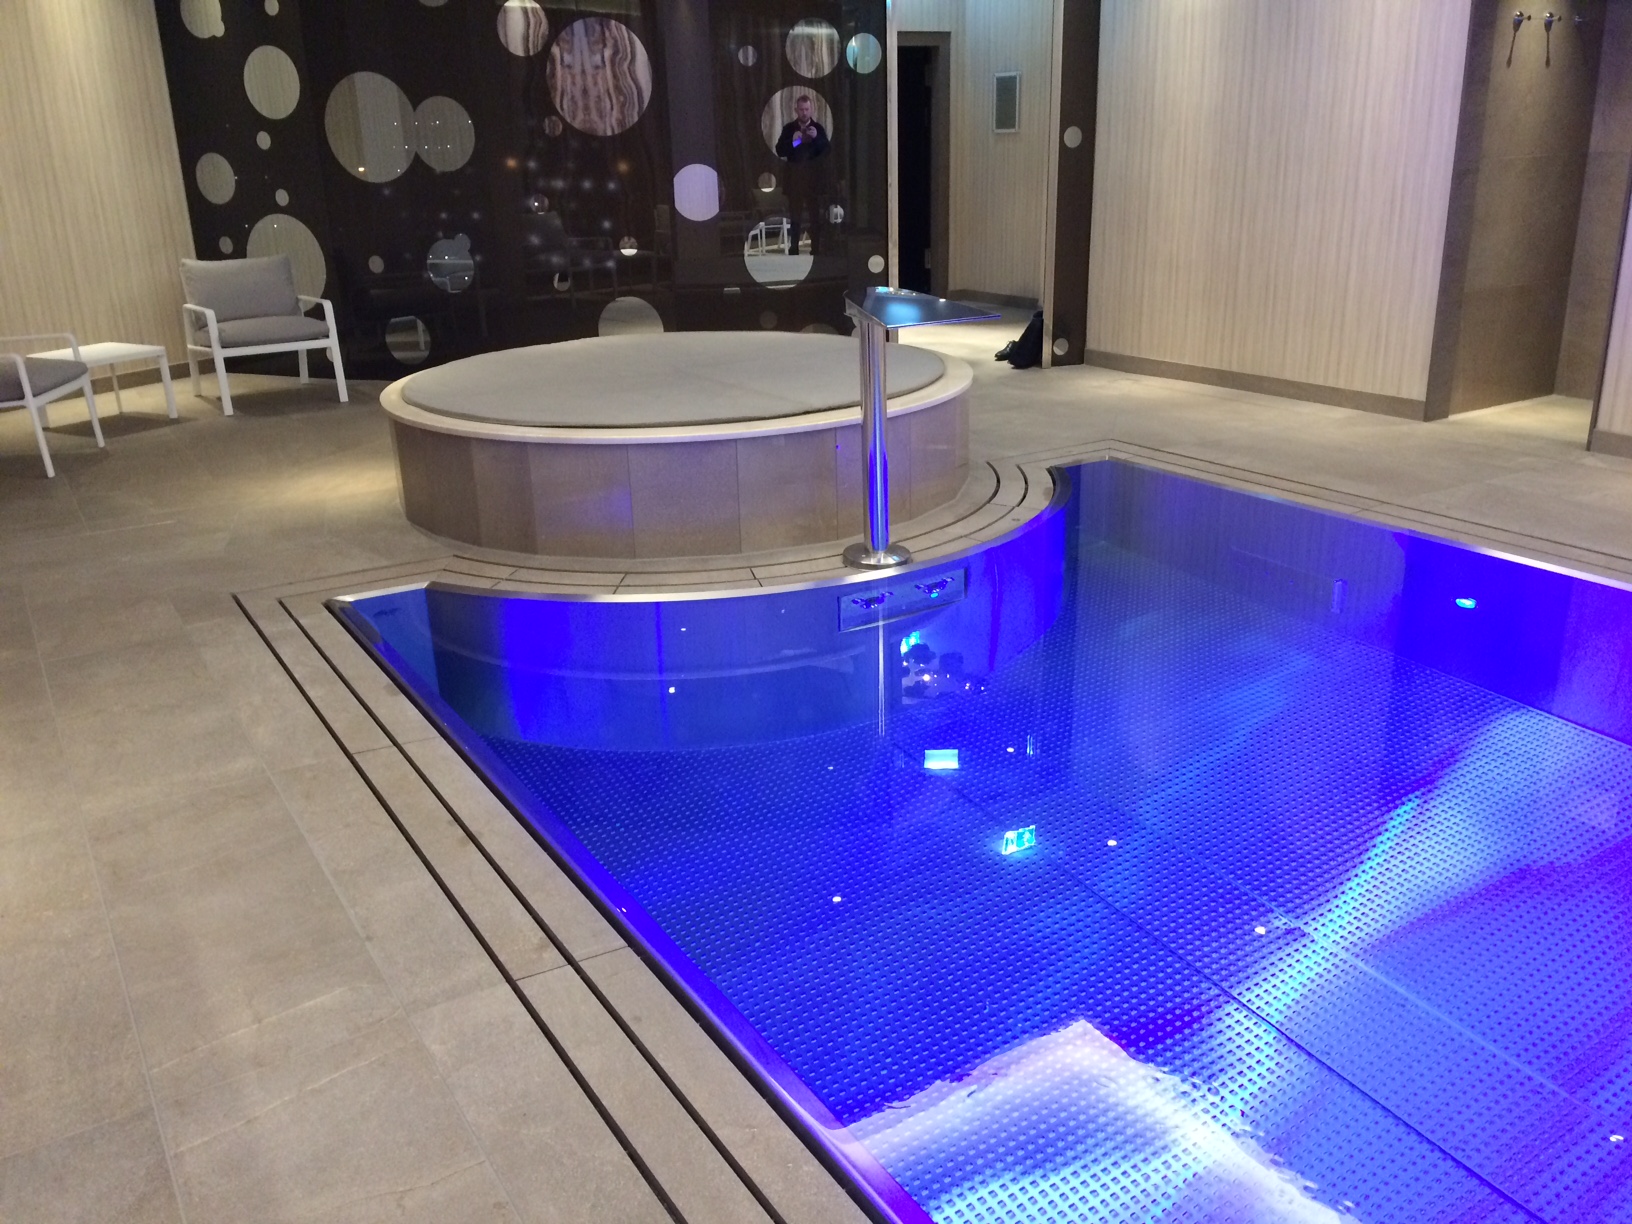 Stainless steel hotel pool IMAGINOX in luxury wellness